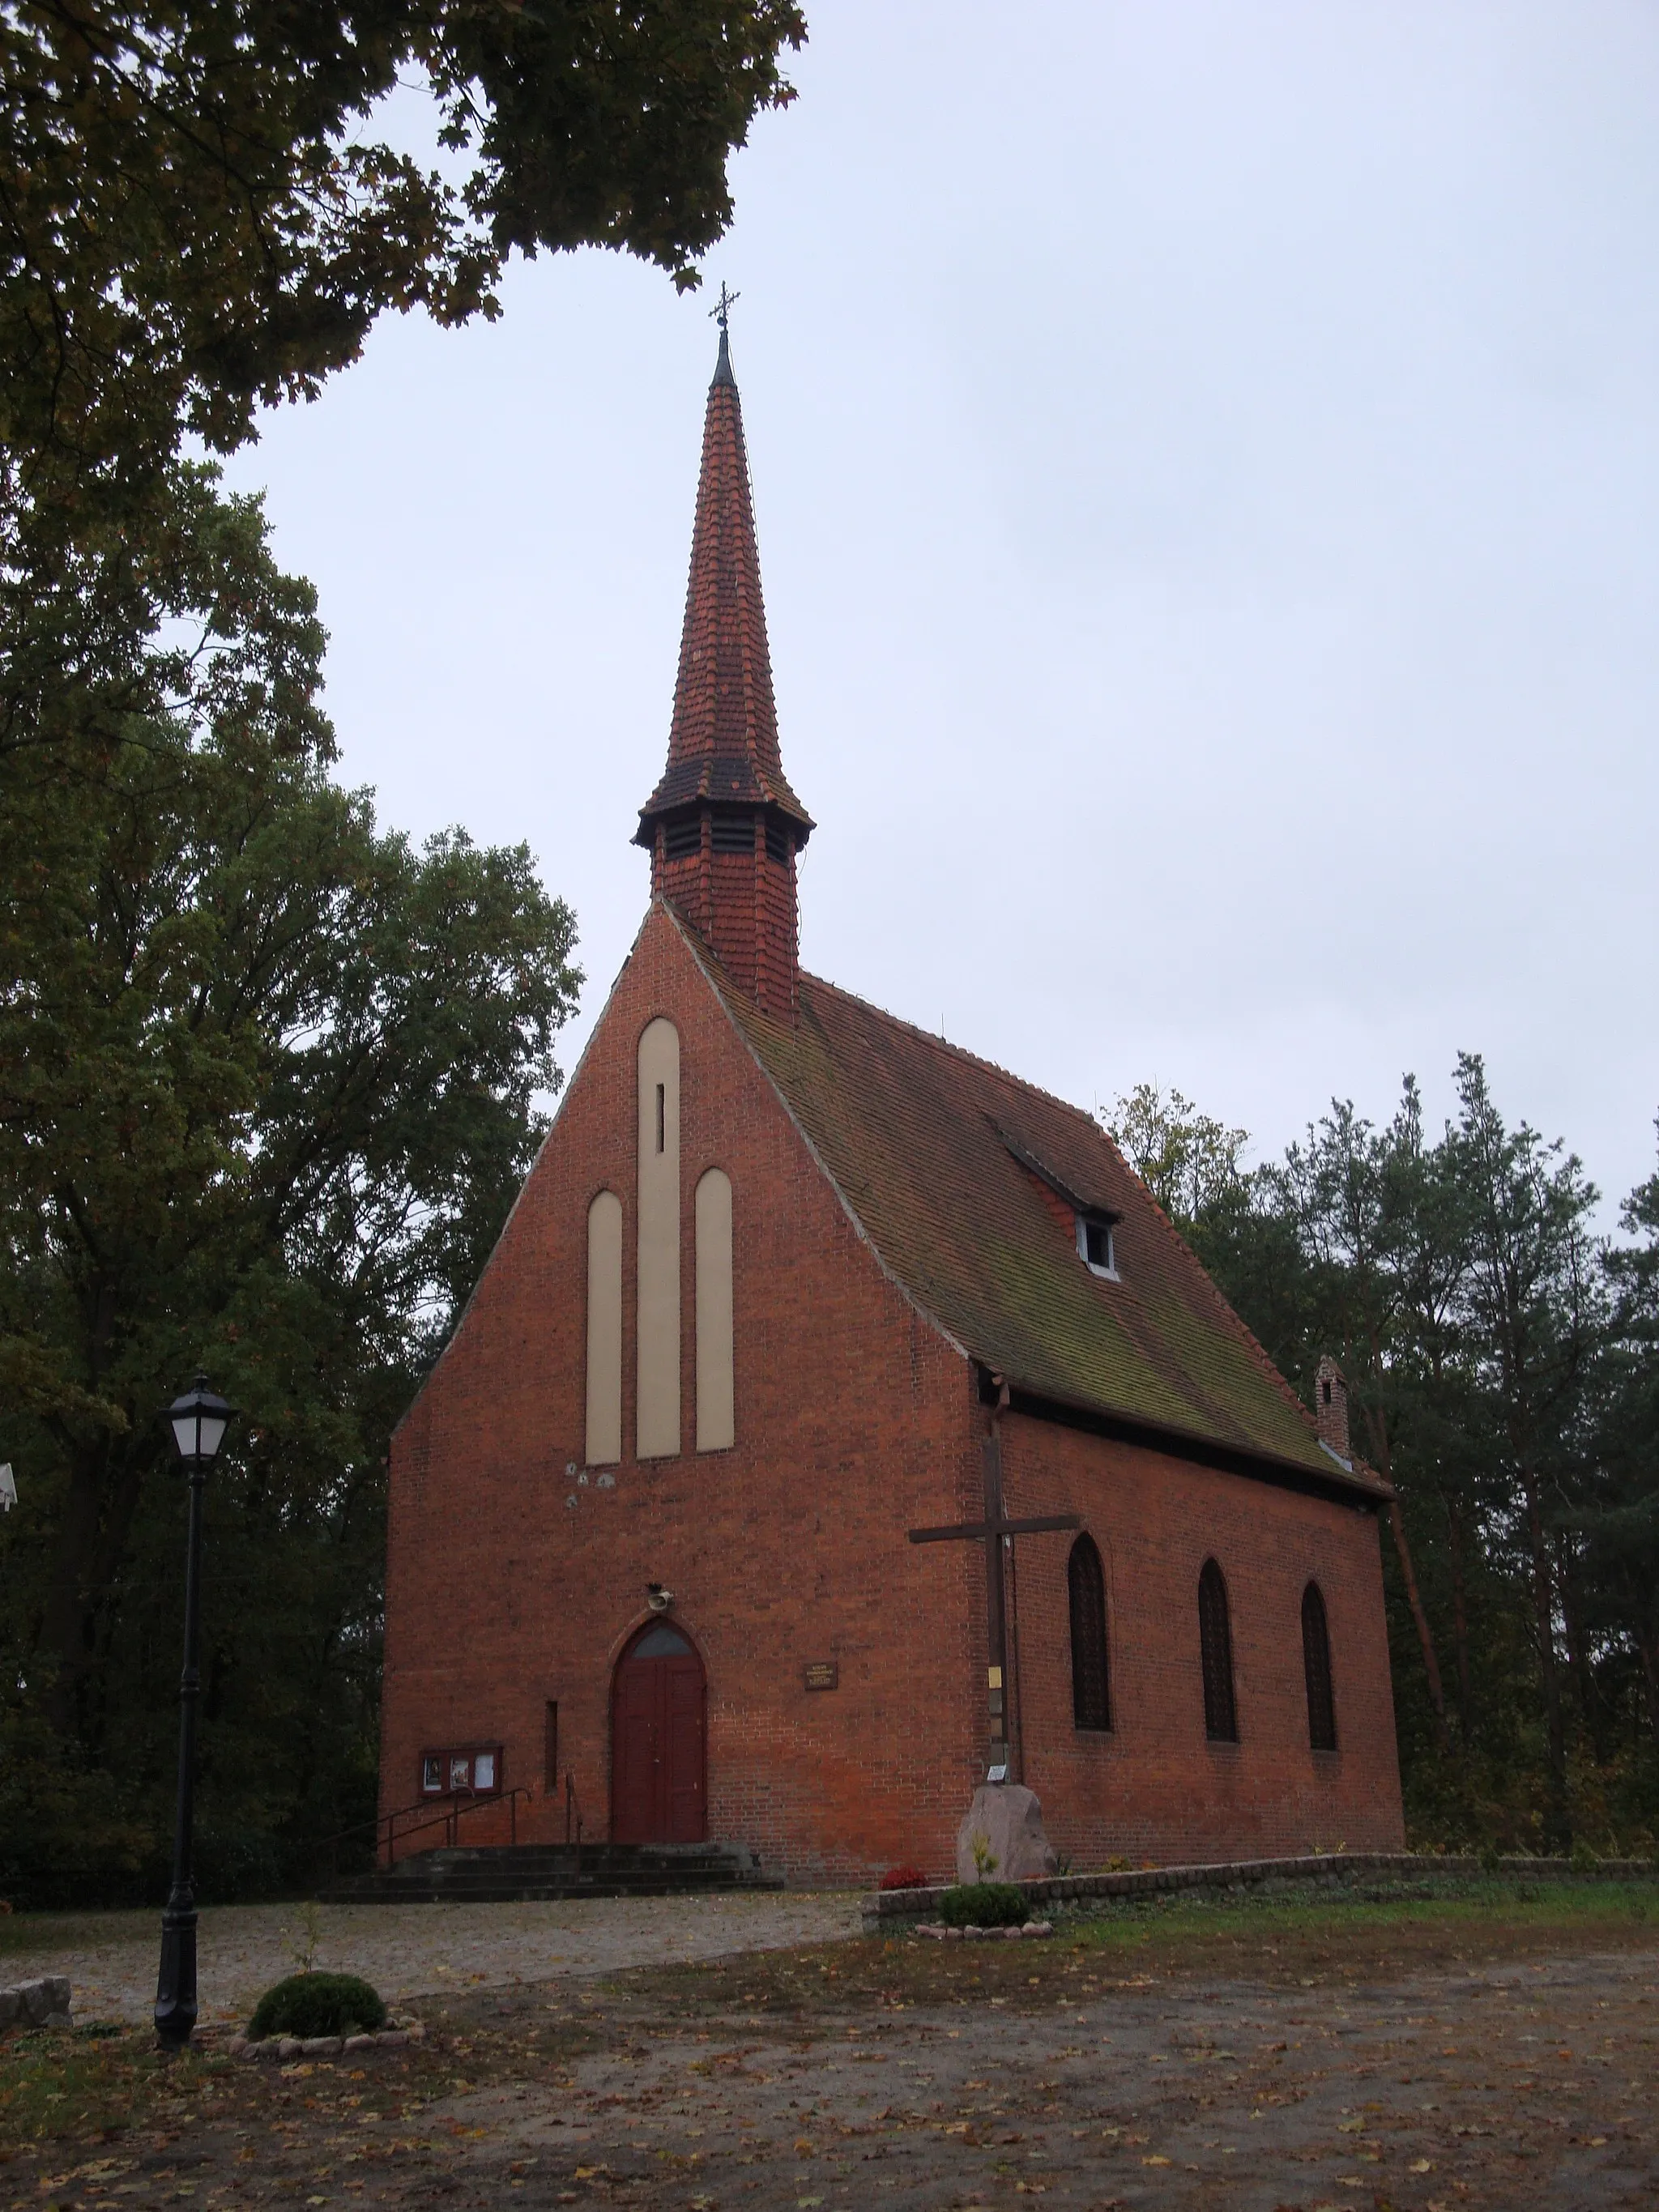 Photo showing: Parroch church of St. Andrzej Bobola in Pieńki Królewskie, near Grudziądz, Poland